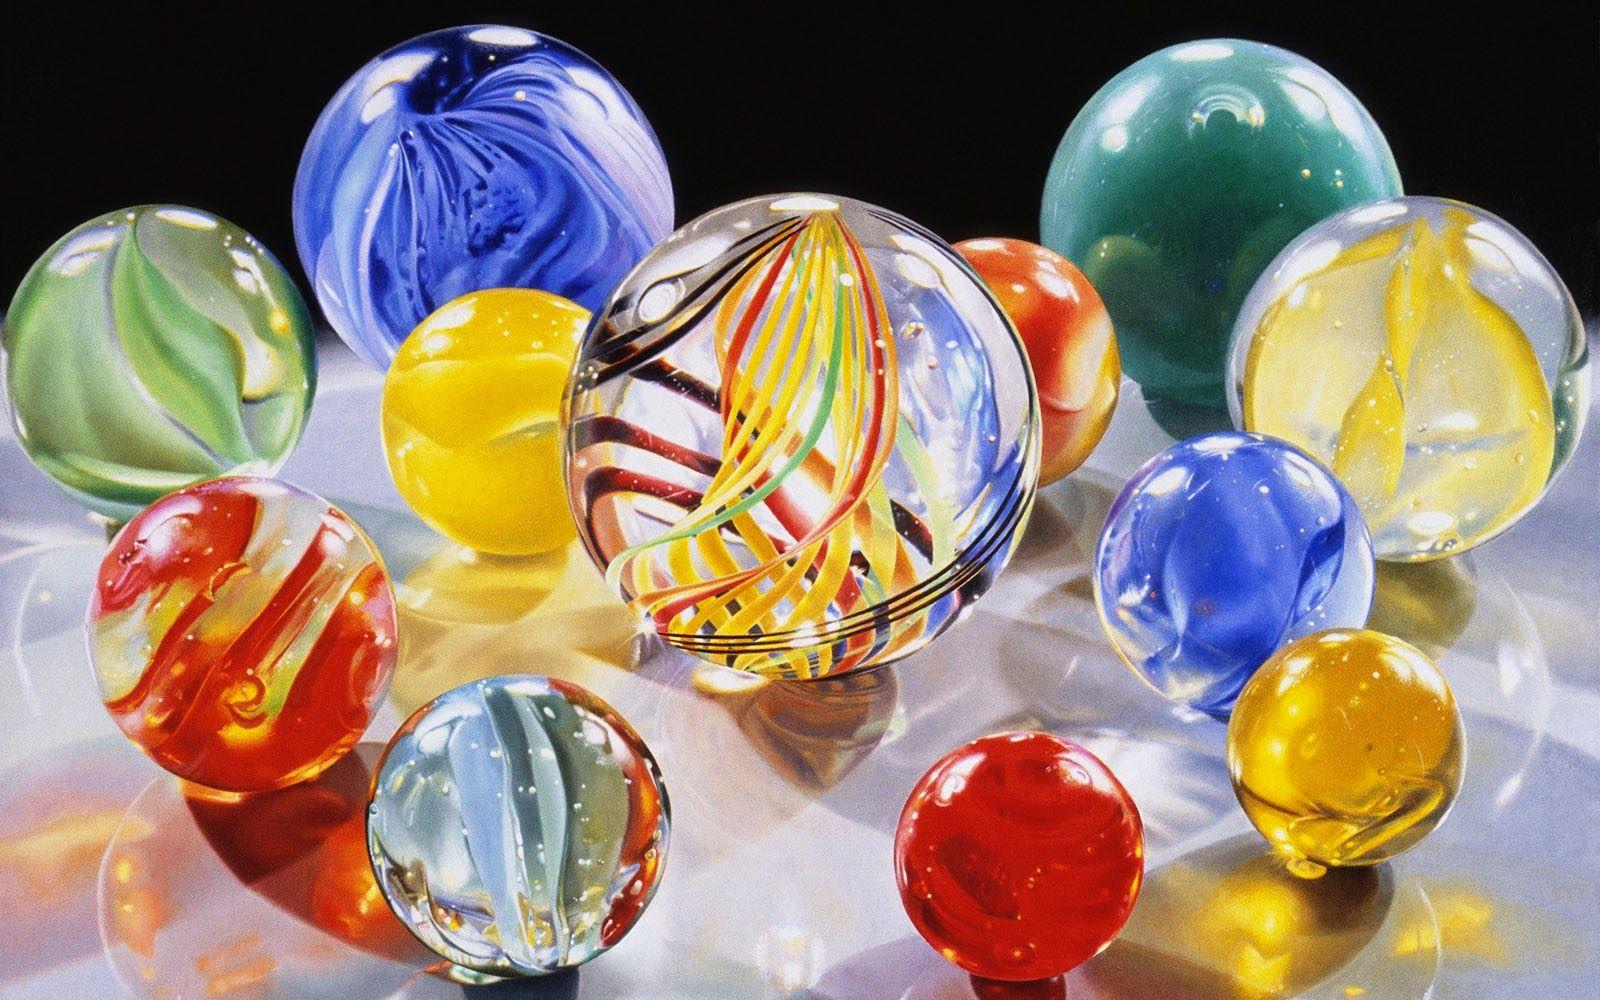 Clovisso Wallpaper Gallery: Glass Beads Wallpaper